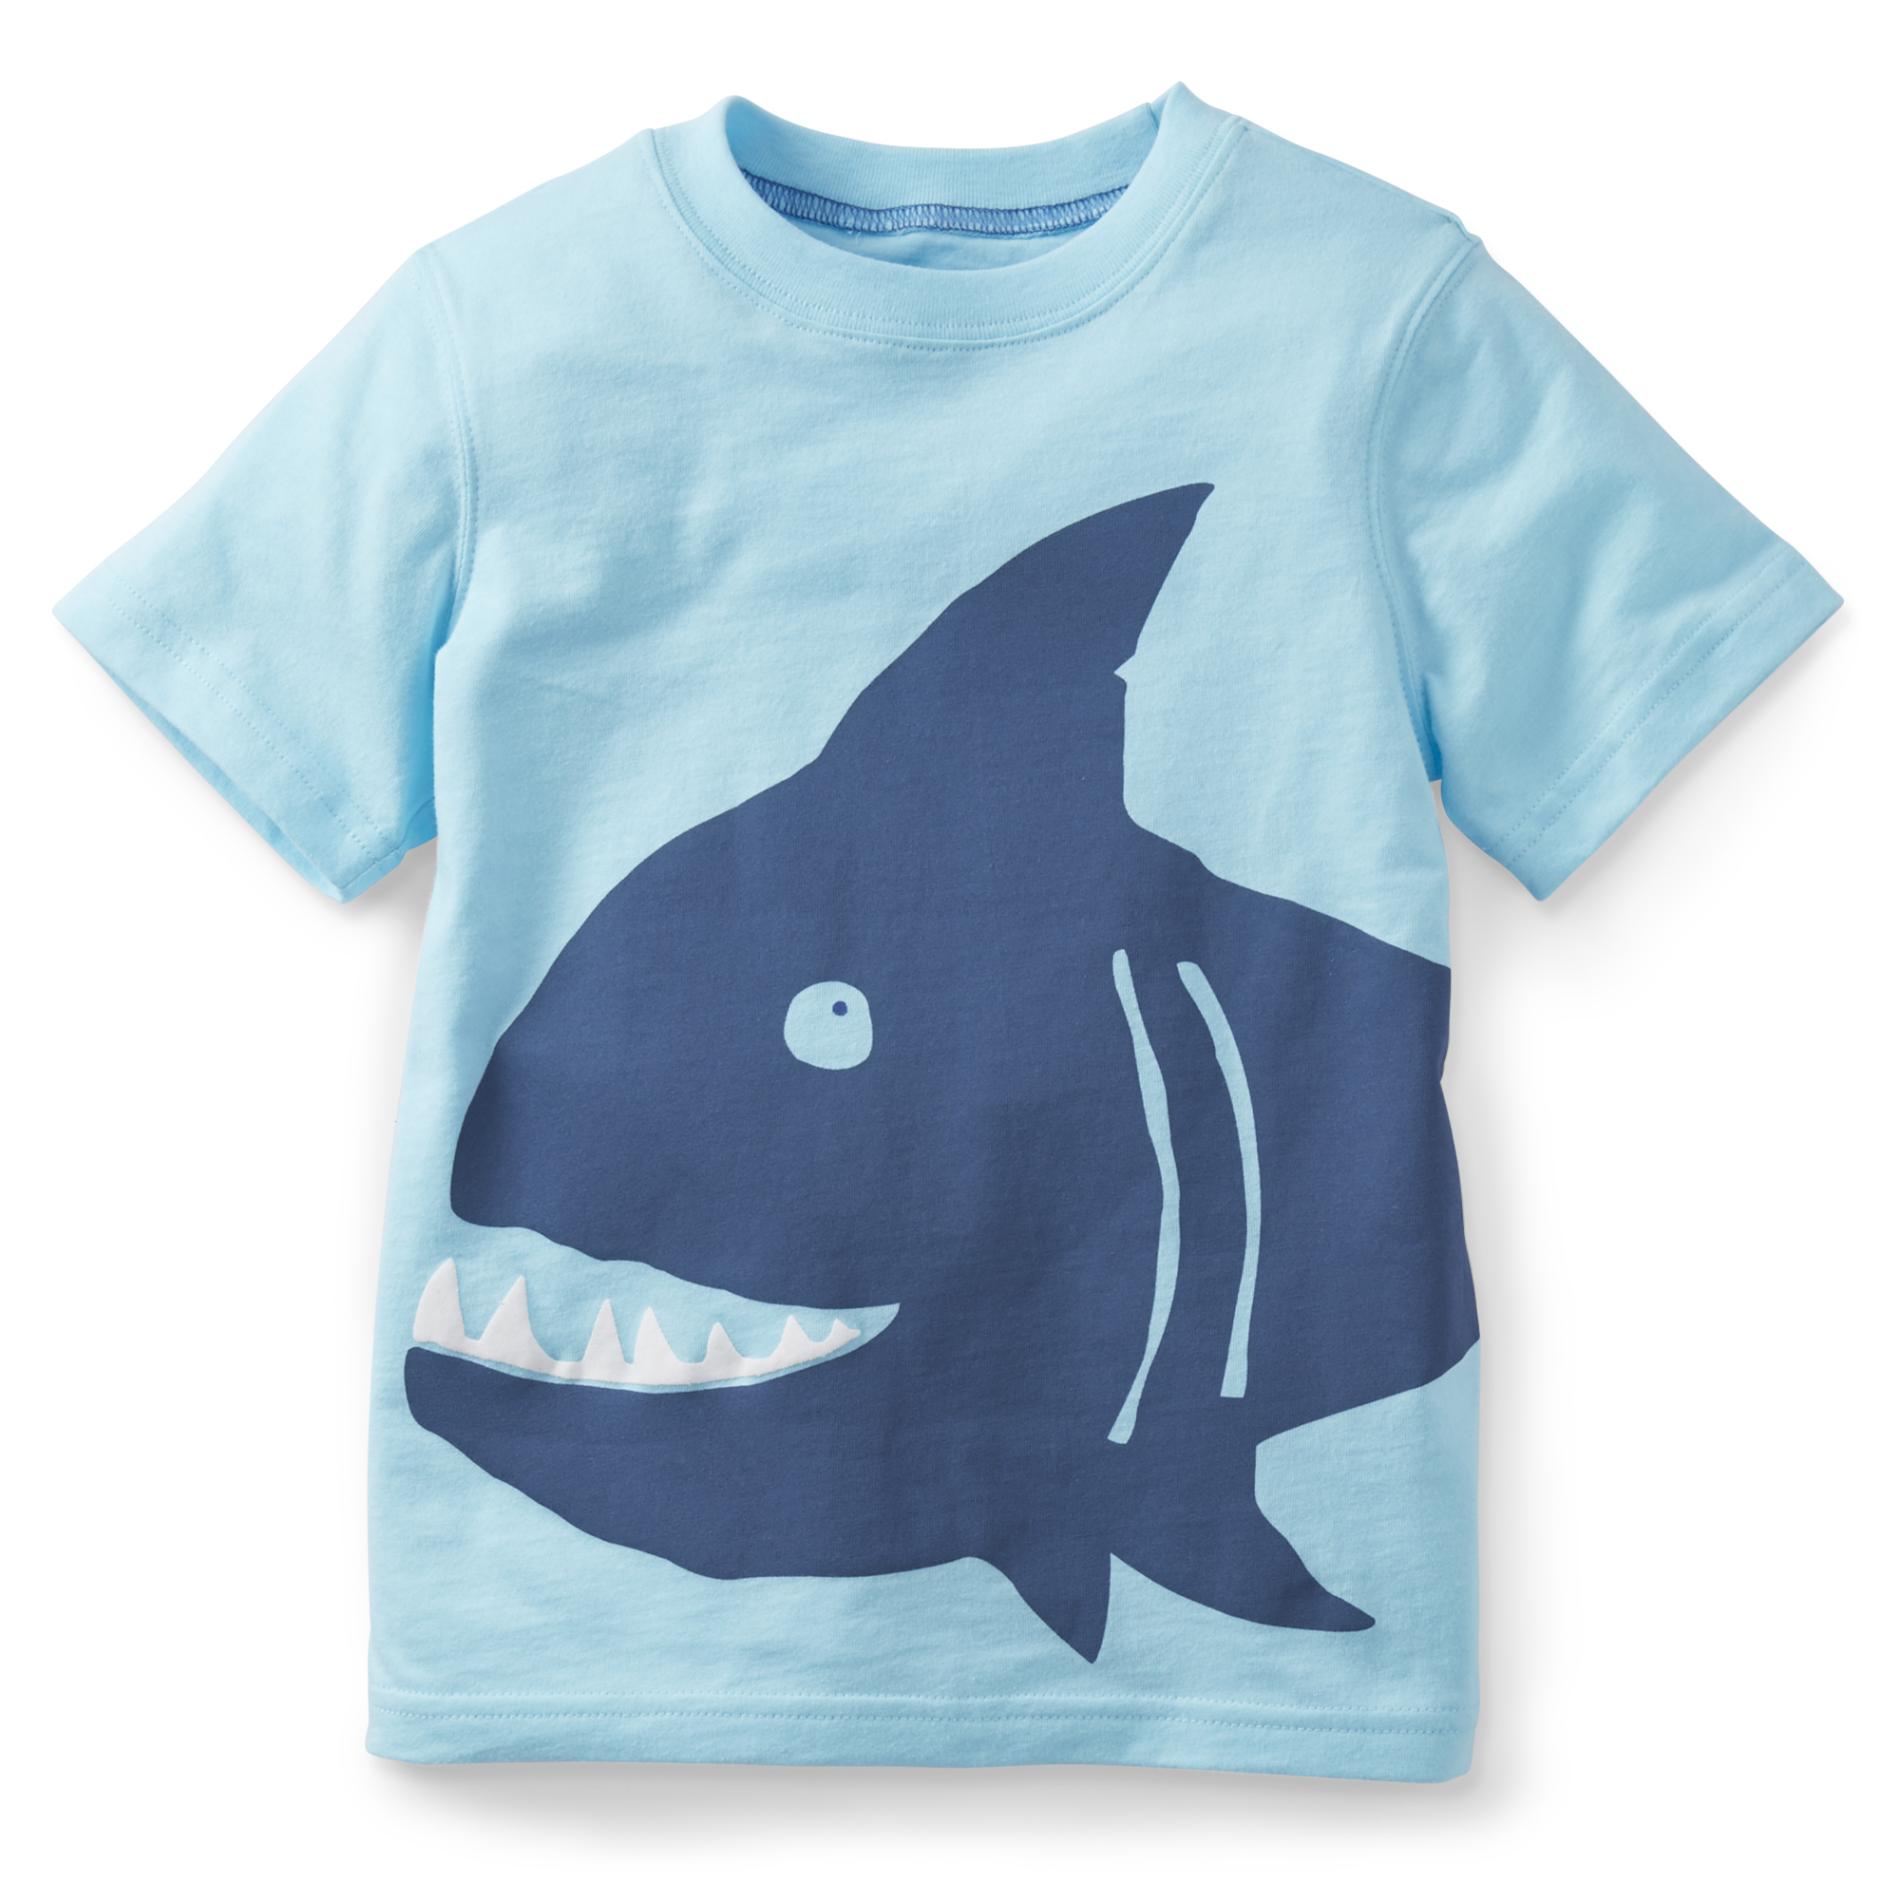 Carter's Boy's Graphic T-Shirt - Shark